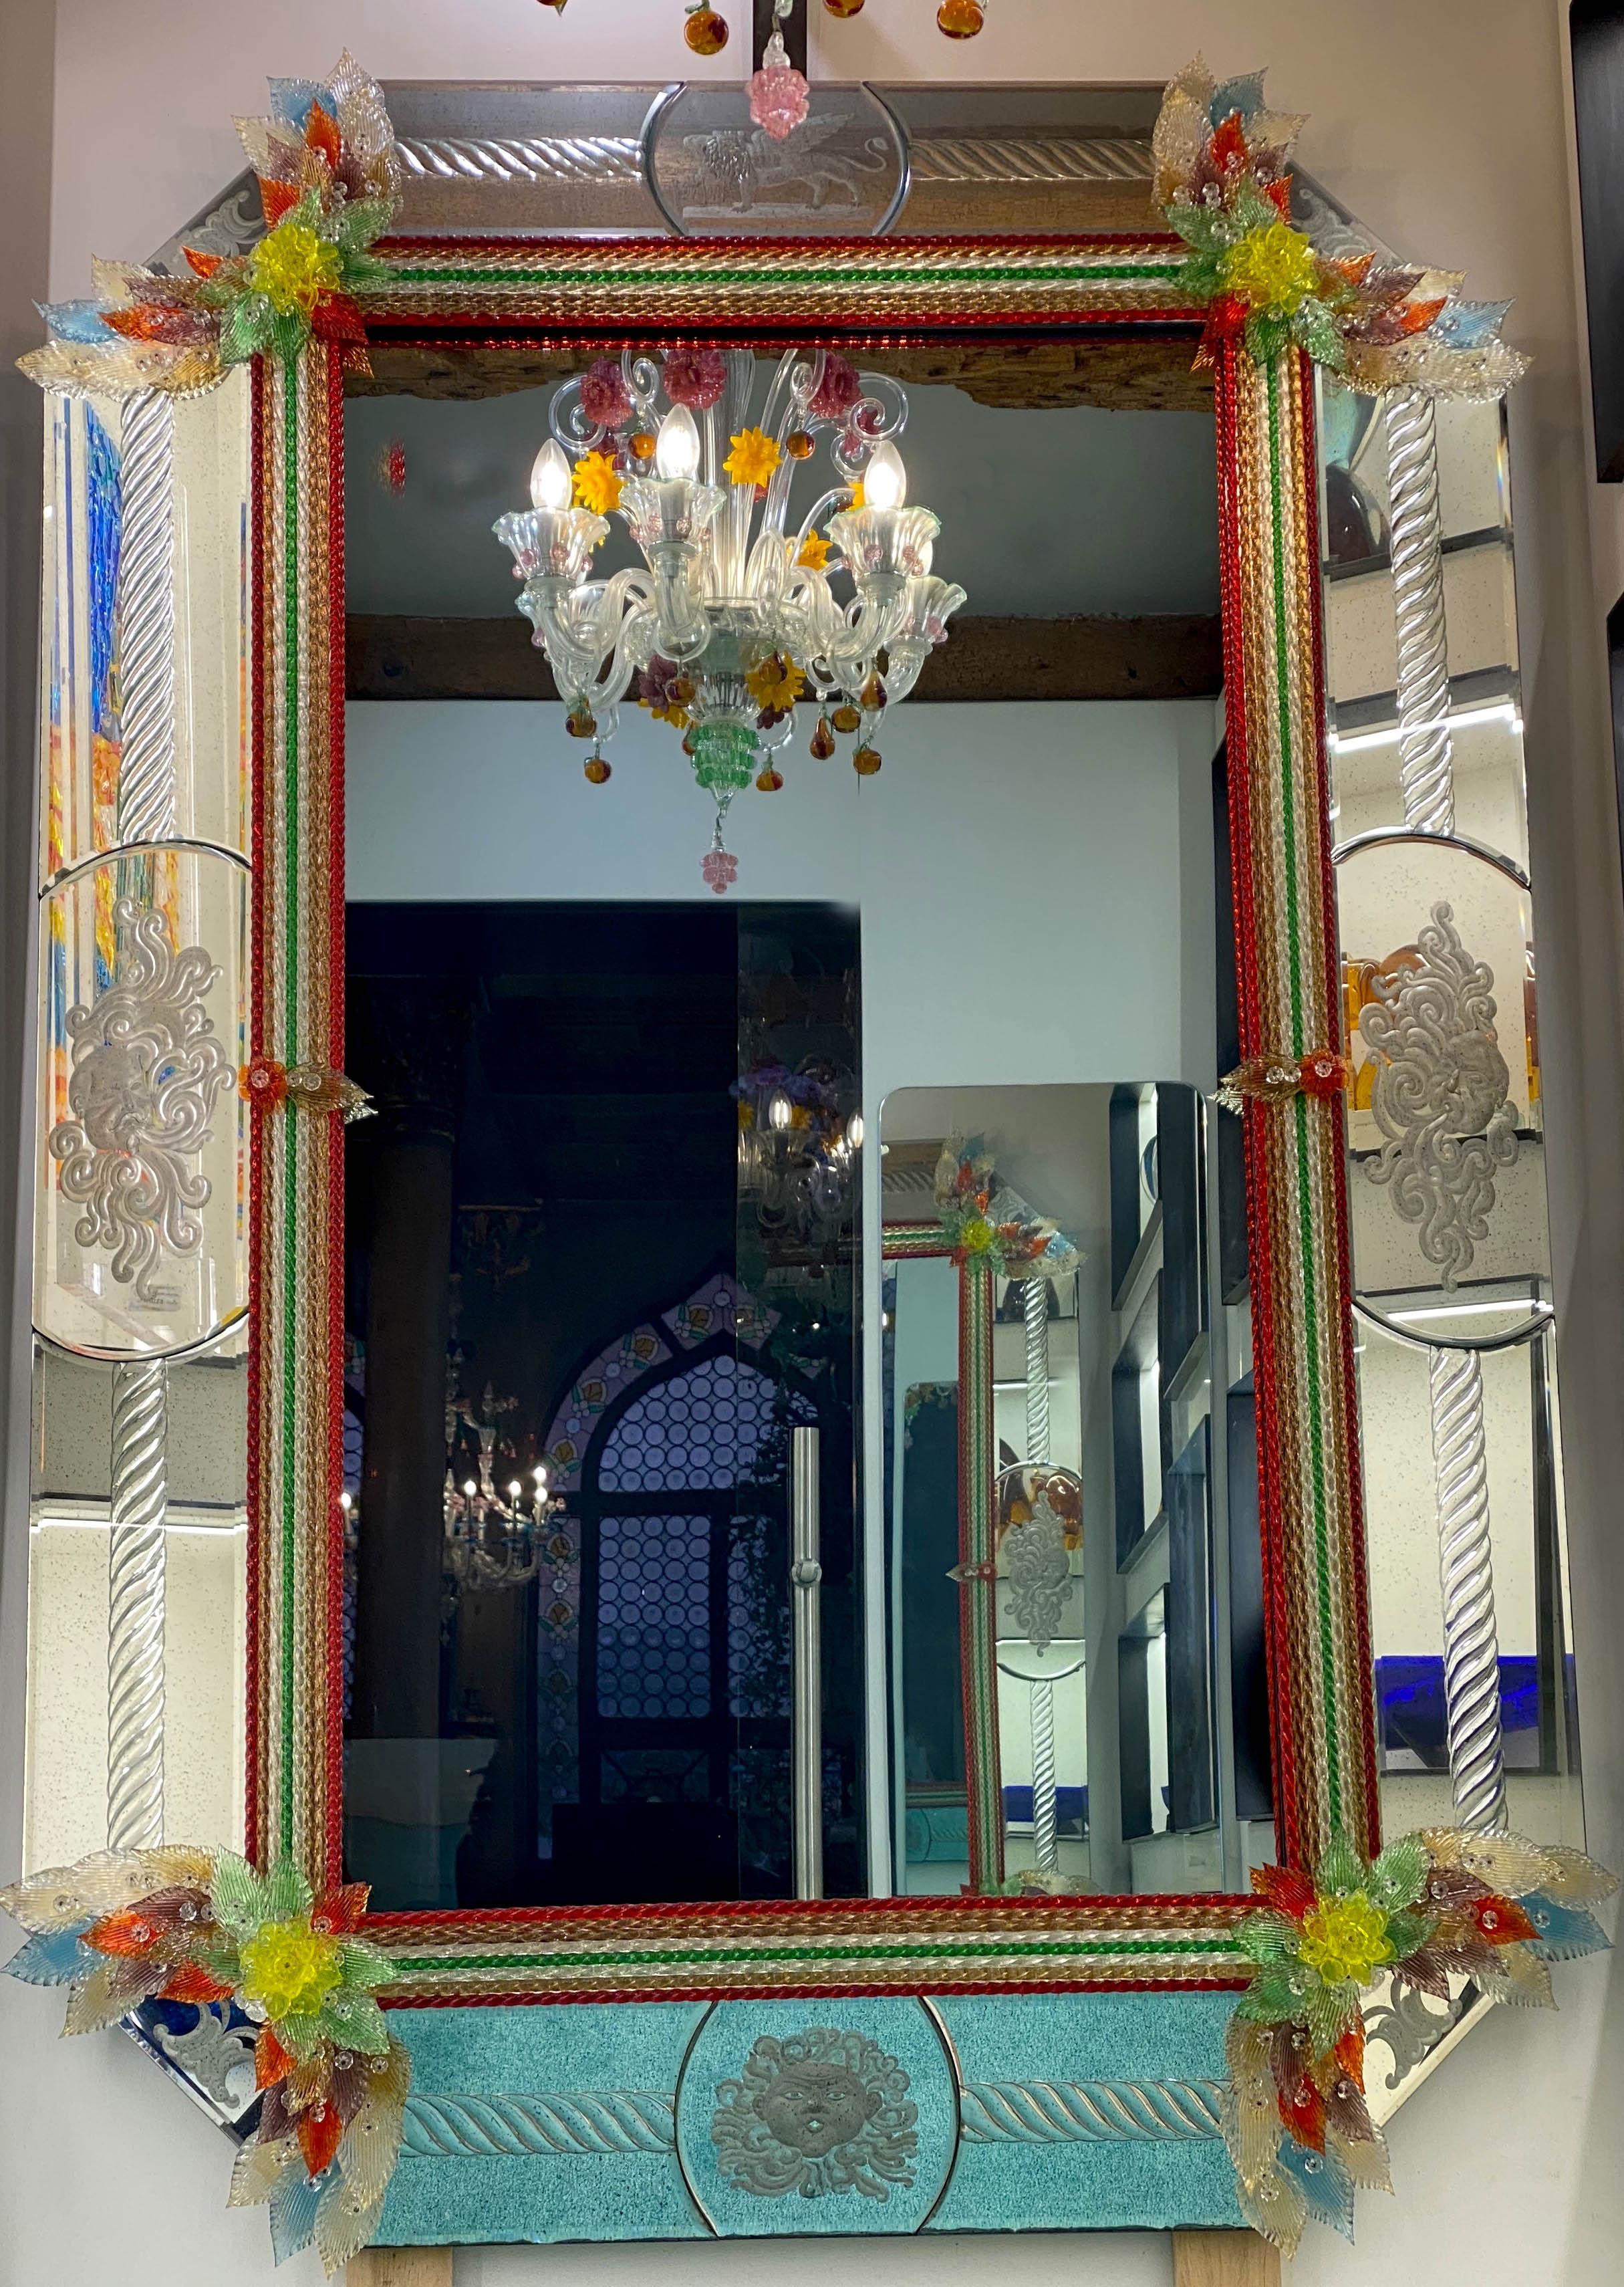 Dieser schöne venezianische Spiegel ist mit geätzten Figurenmotiven versehen, die den verspiegelten Rahmen zieren. In der Mitte ein Löwe als Symbol für Venedig. An den Rändern des Rahmens befinden sich bunte Seilakzente aus Glas und zahlreiche